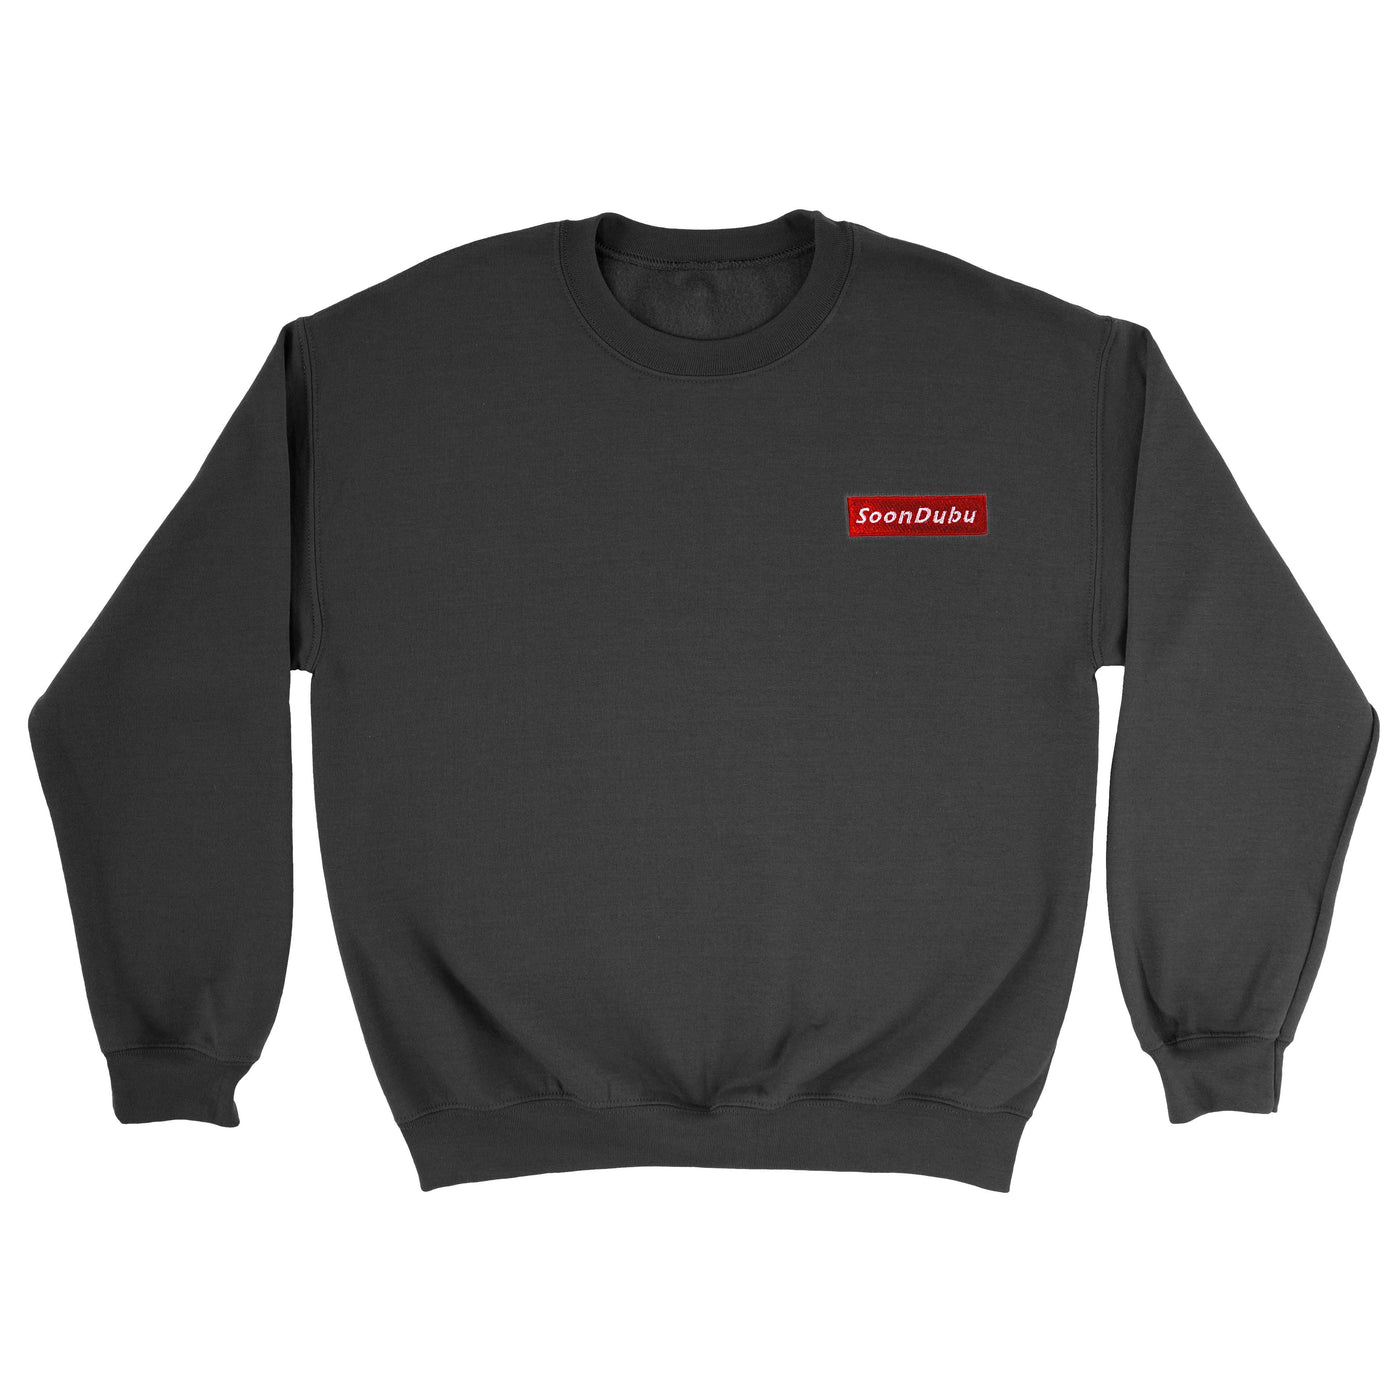 Soondubu - Embroidered Unisex Sweater